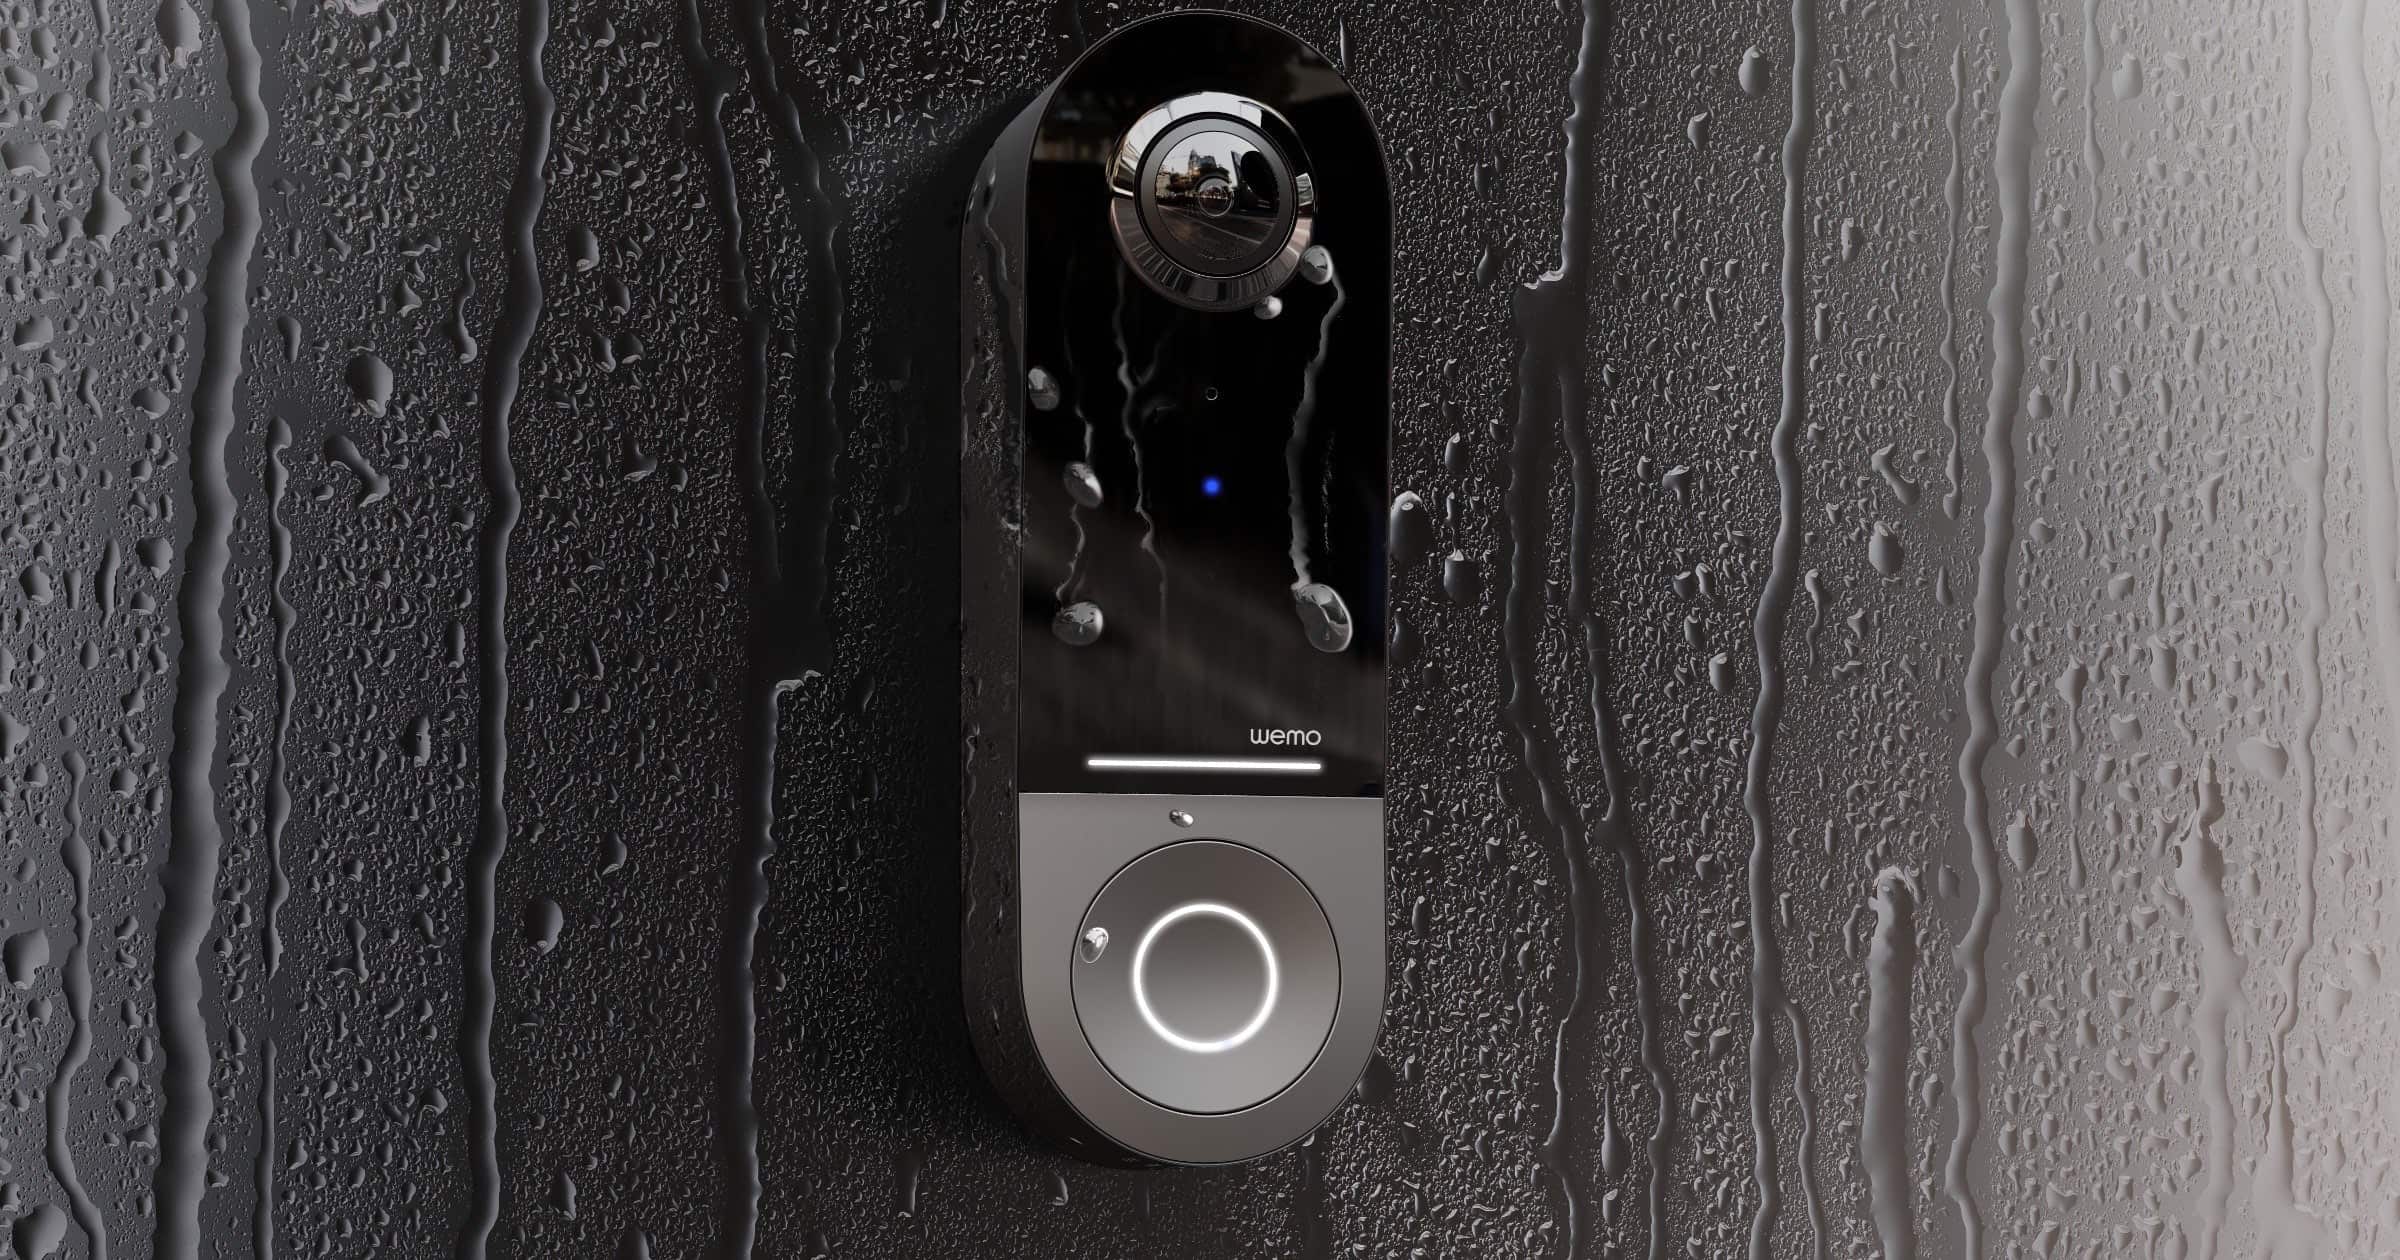 Pepcom 2022: Wemo Announces a Smart Video Doorbell for HomeKit